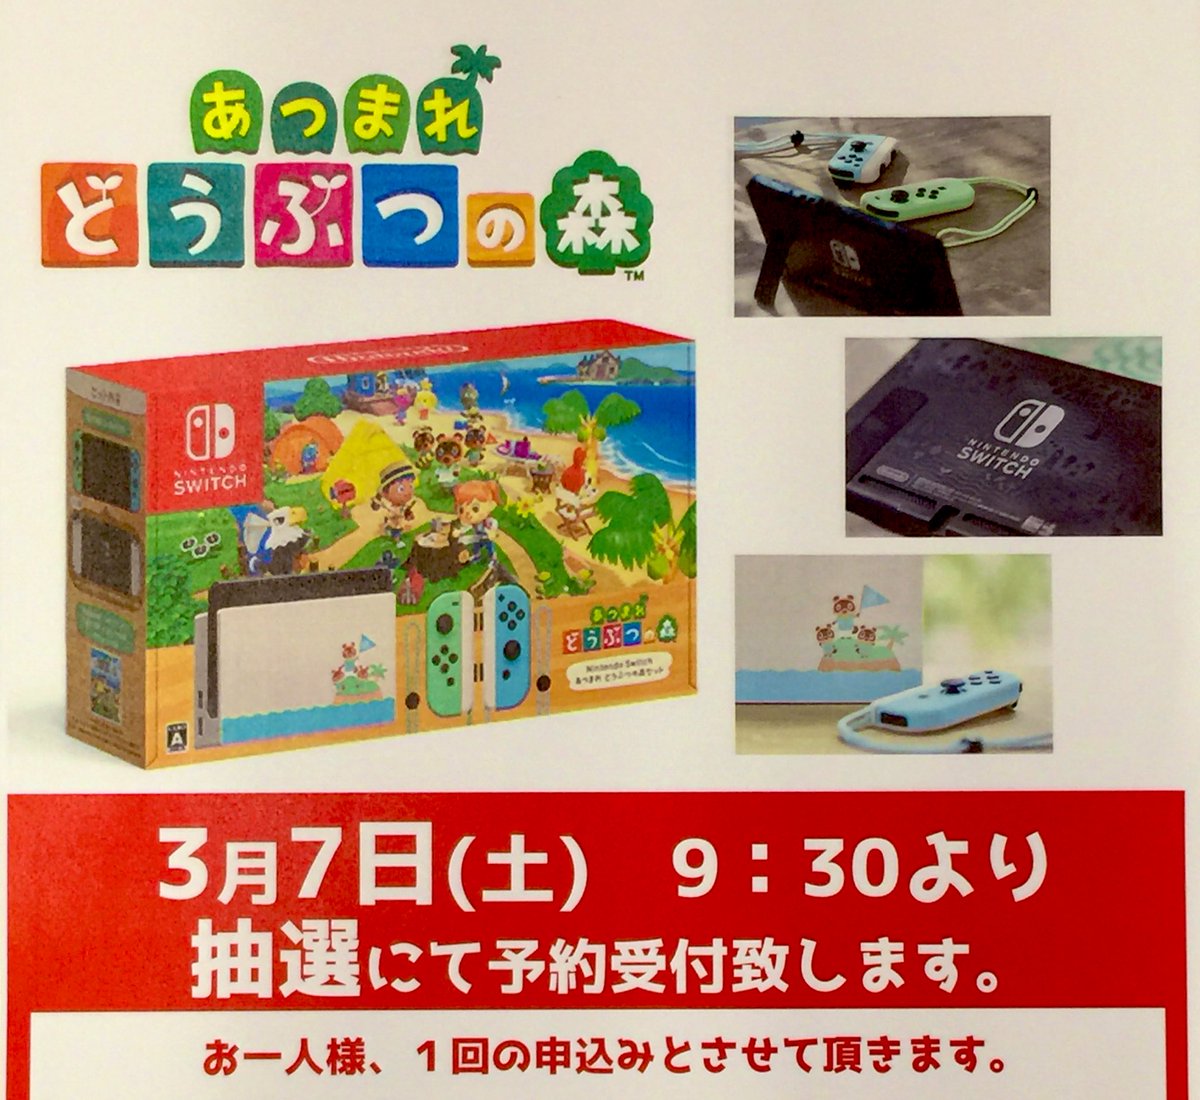 Nintendo Switch あつまれ どうぶつの森セット について抽選での予約受付を行うとtsutaya Book Garage 枚方ベルパルレ店が発表